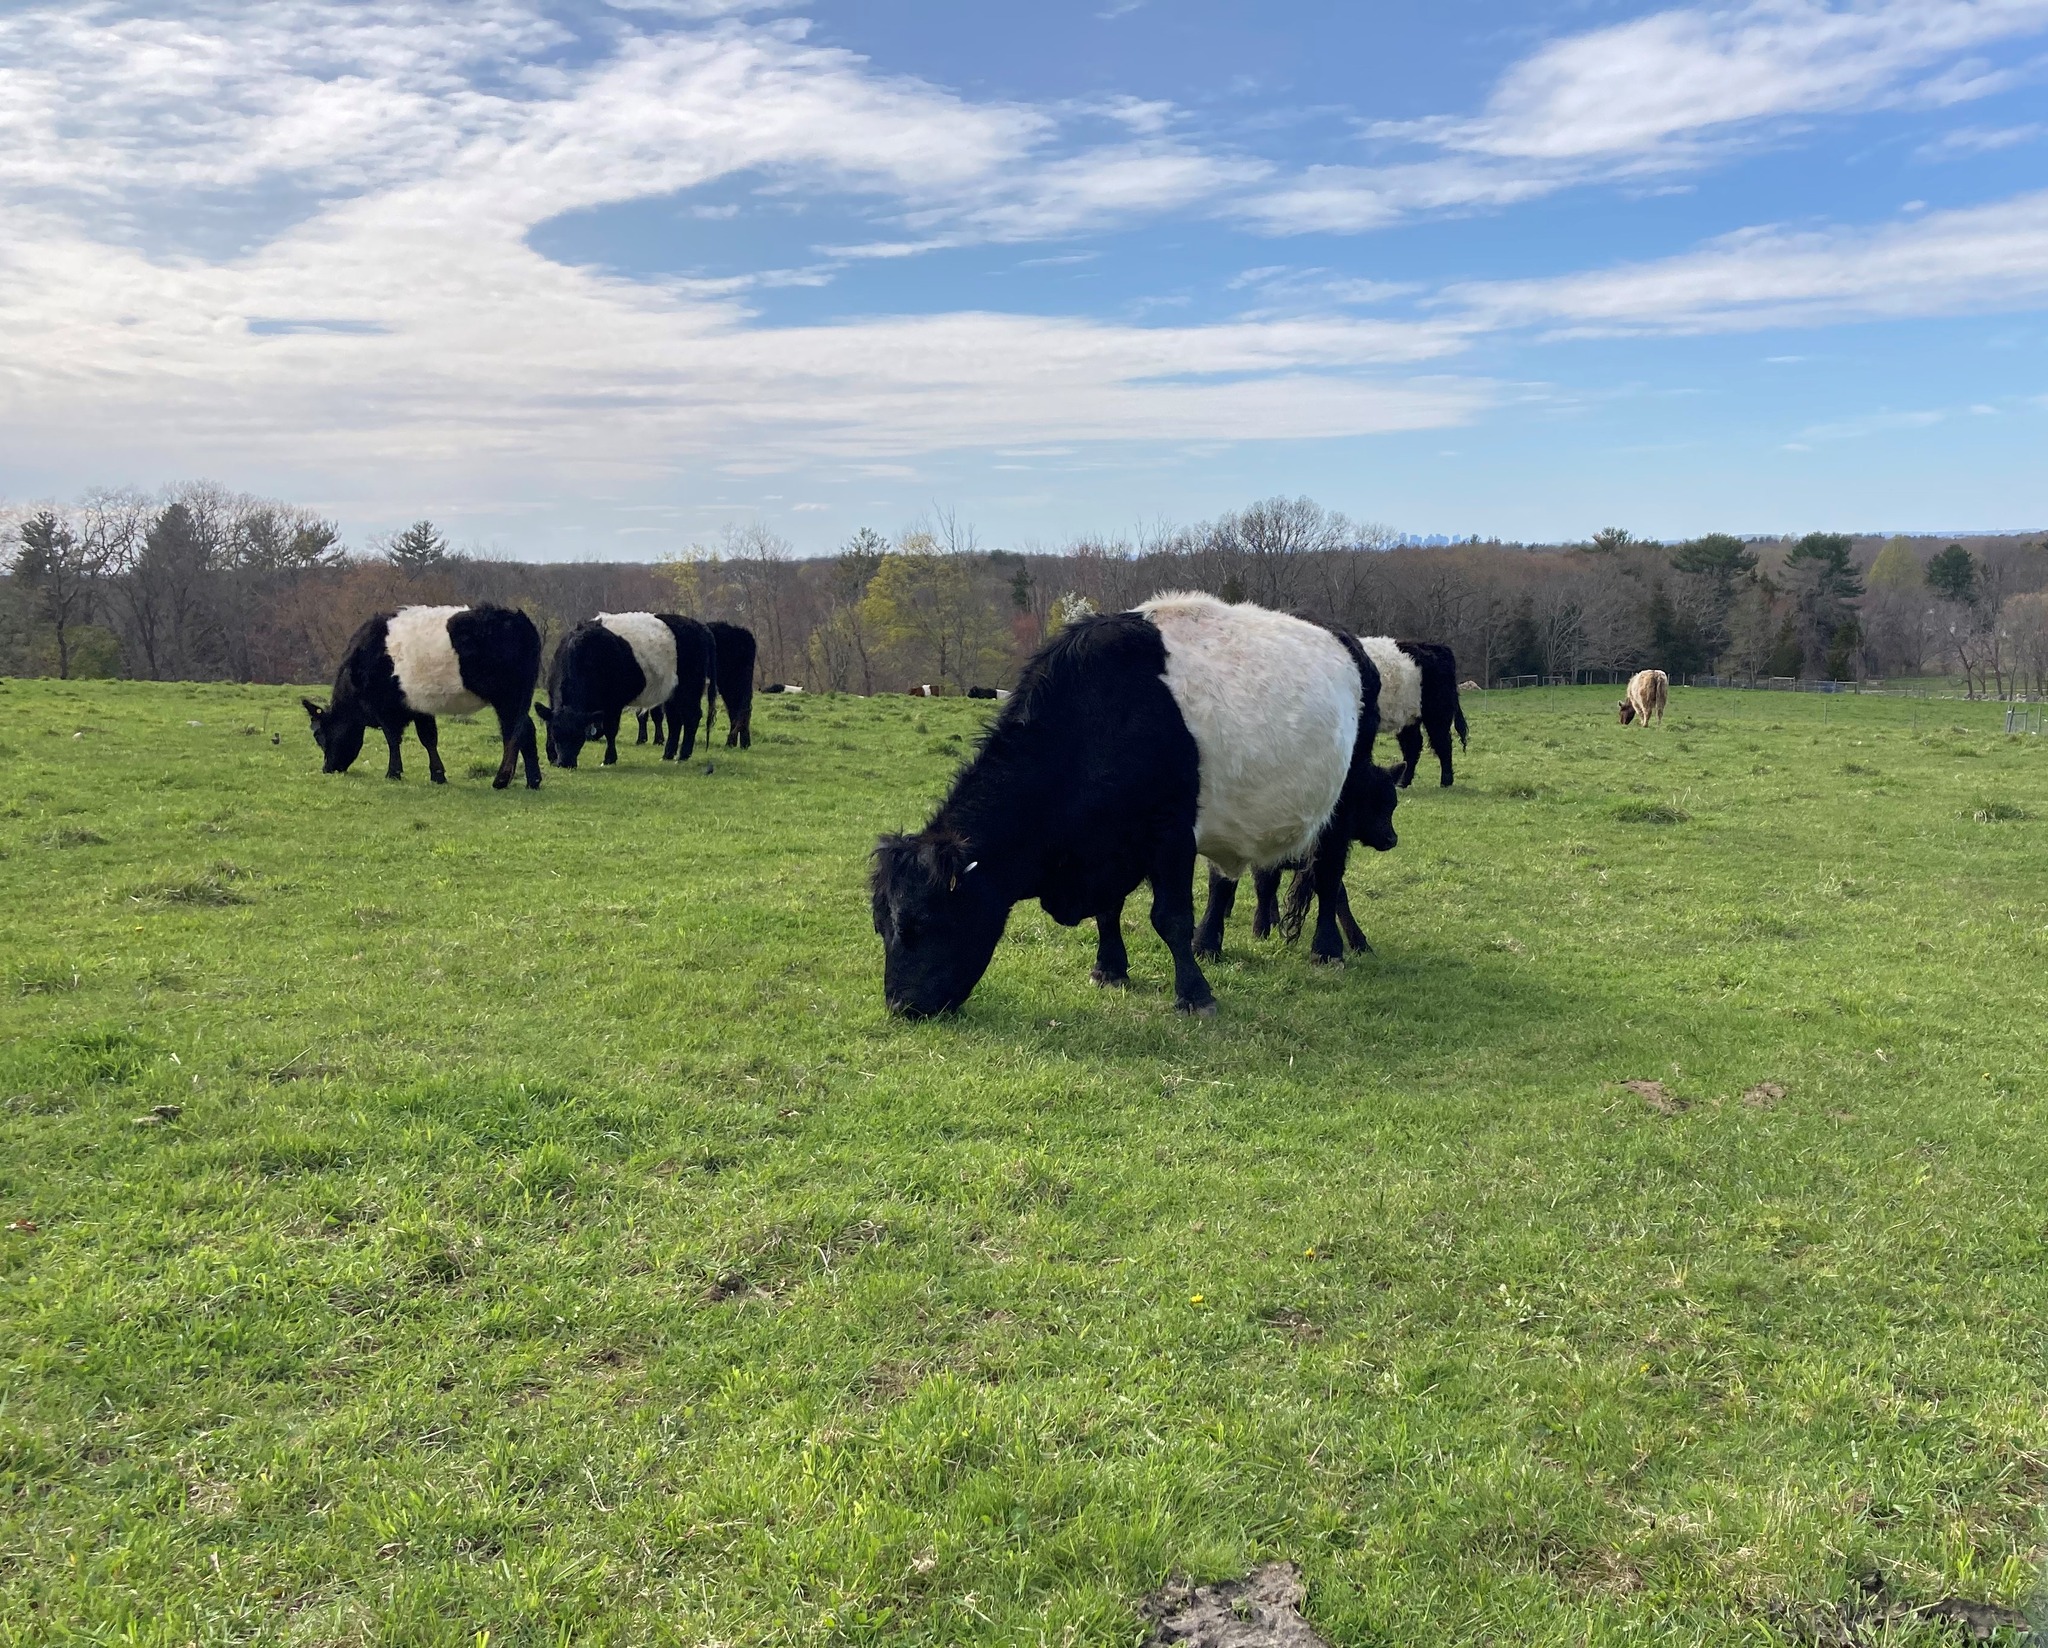 Weir River Farm Cows in the Field